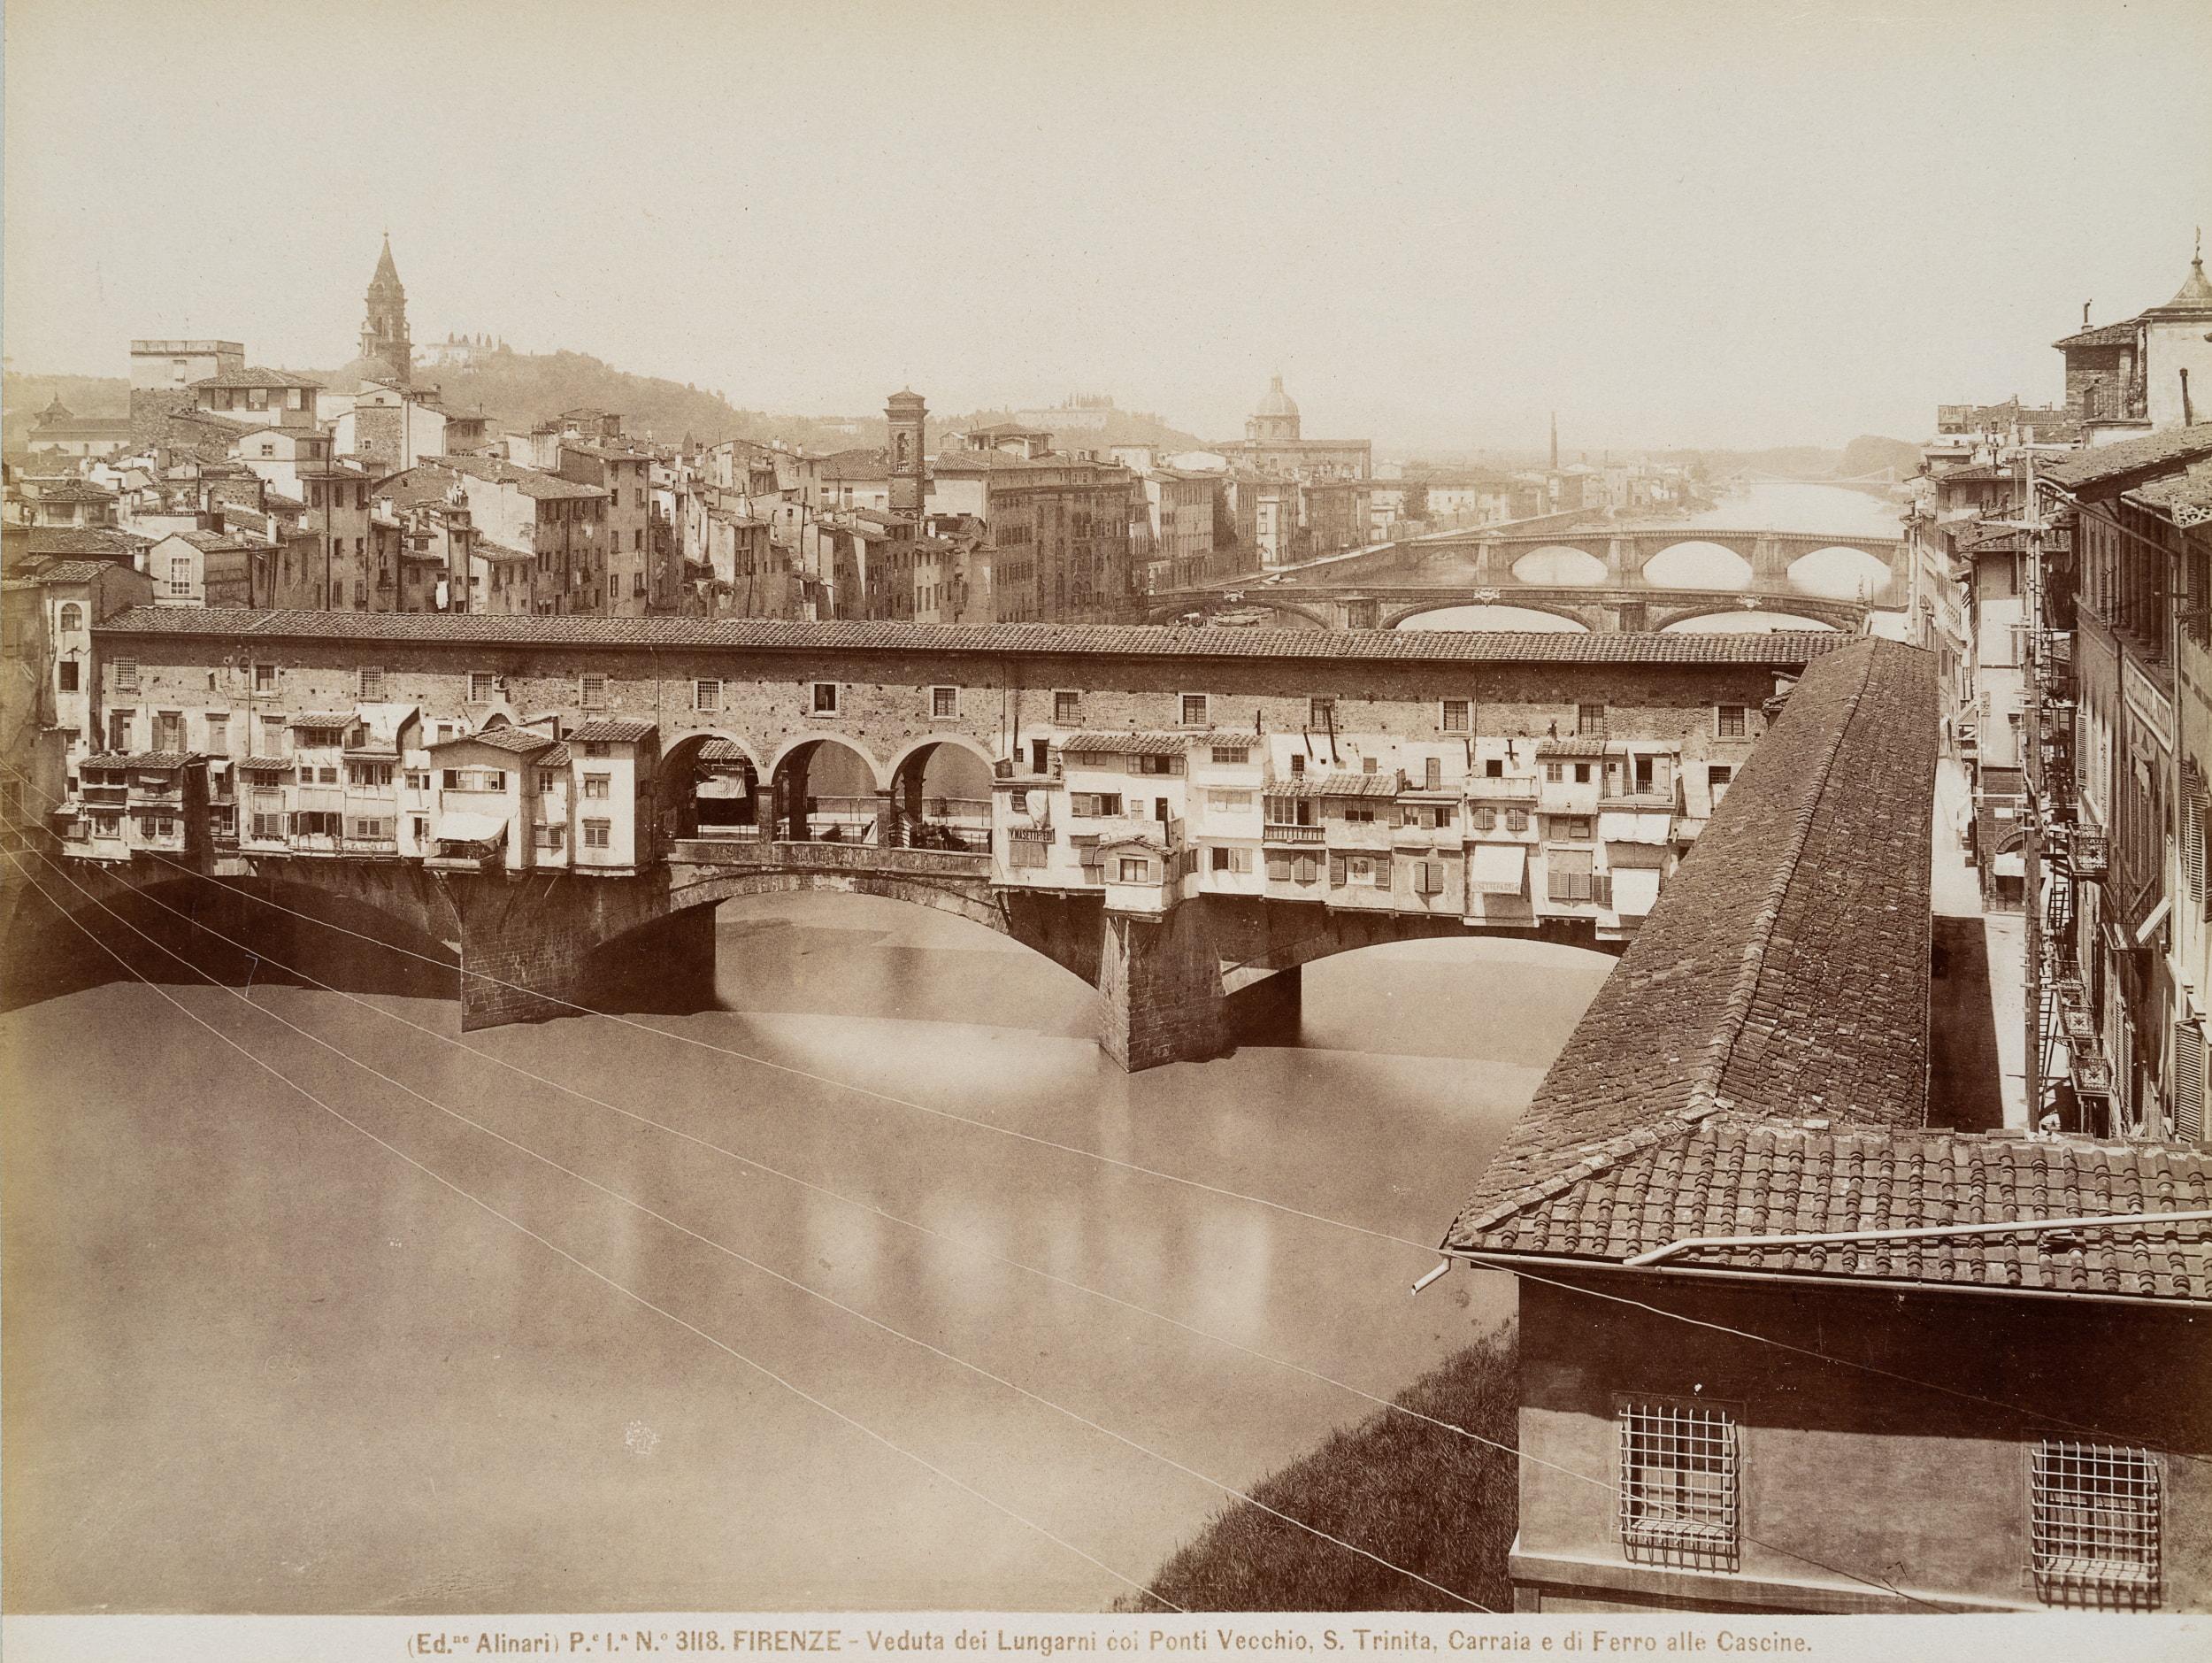 Fratelli Alinari Landscape Photograph - Ponte Vecchio over the Arno, Florence